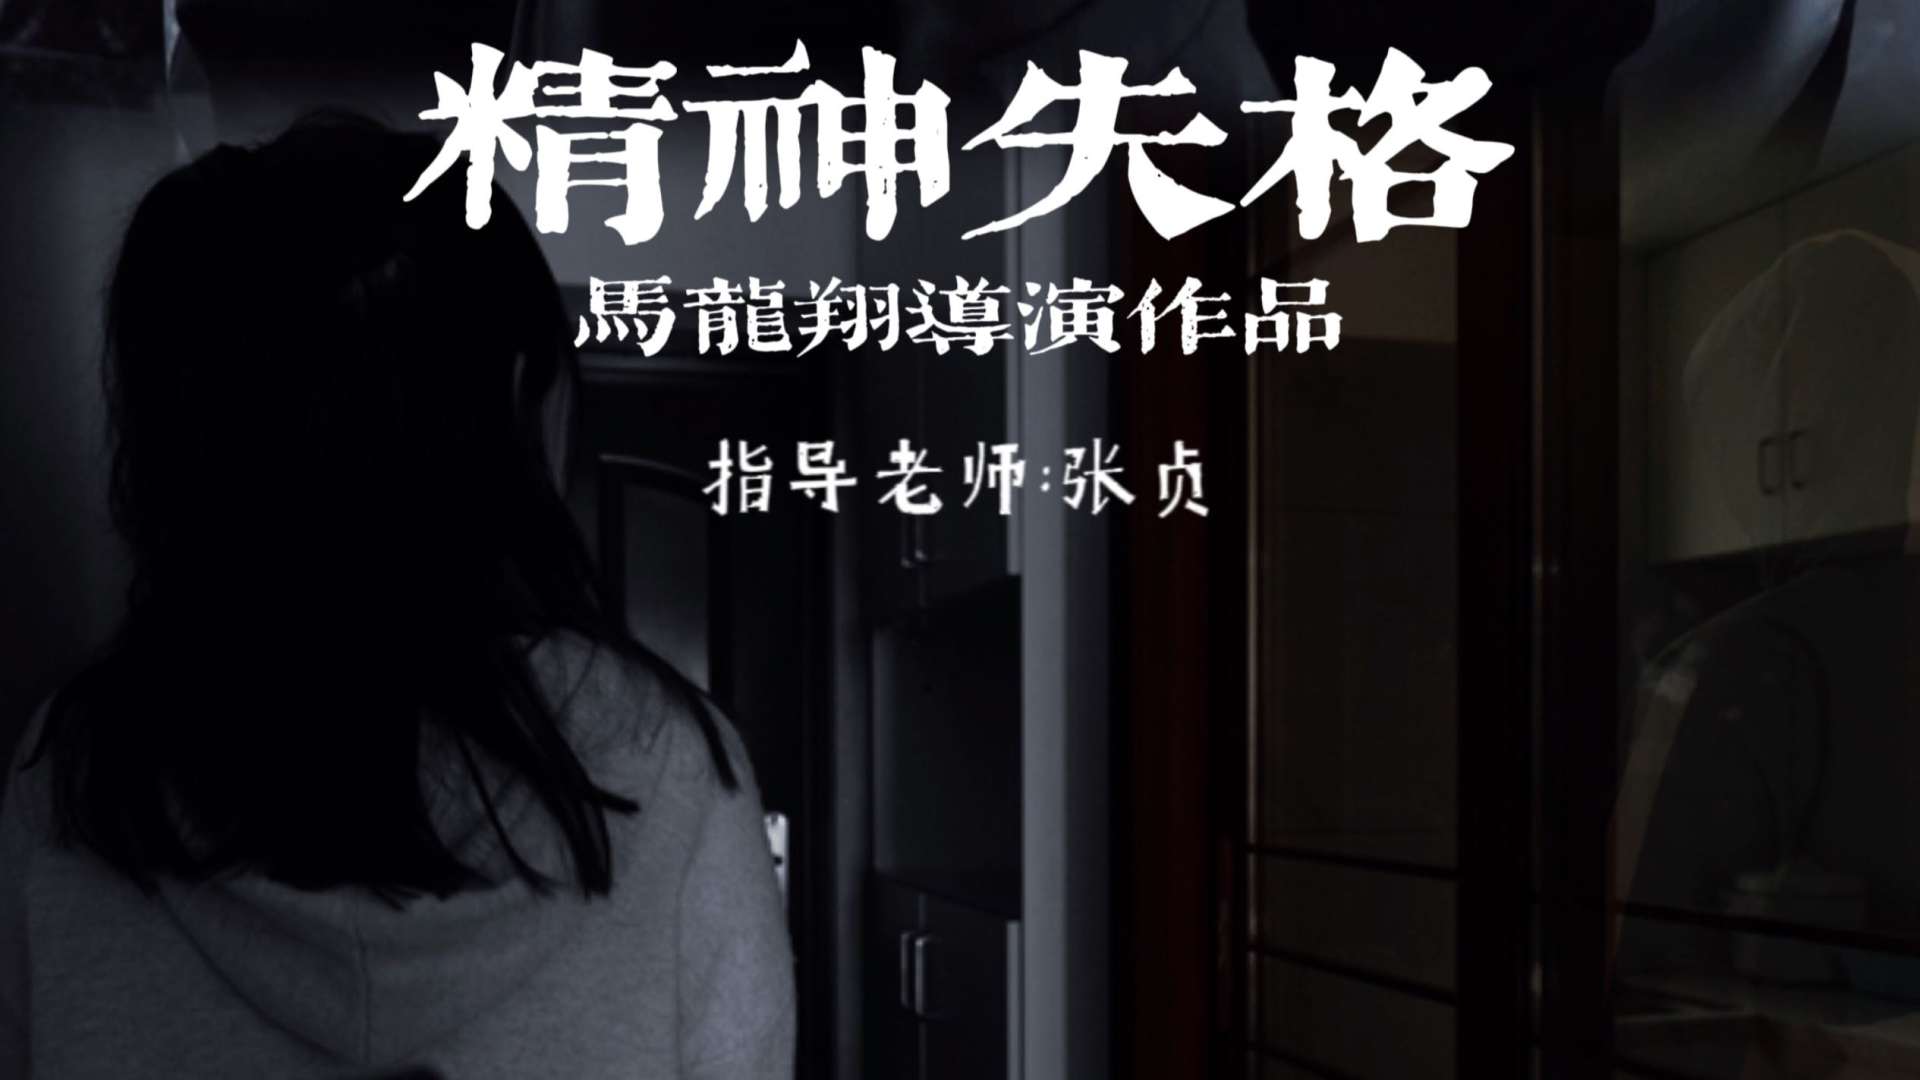 2020江汉大学广播电视专业短片《精神失格》